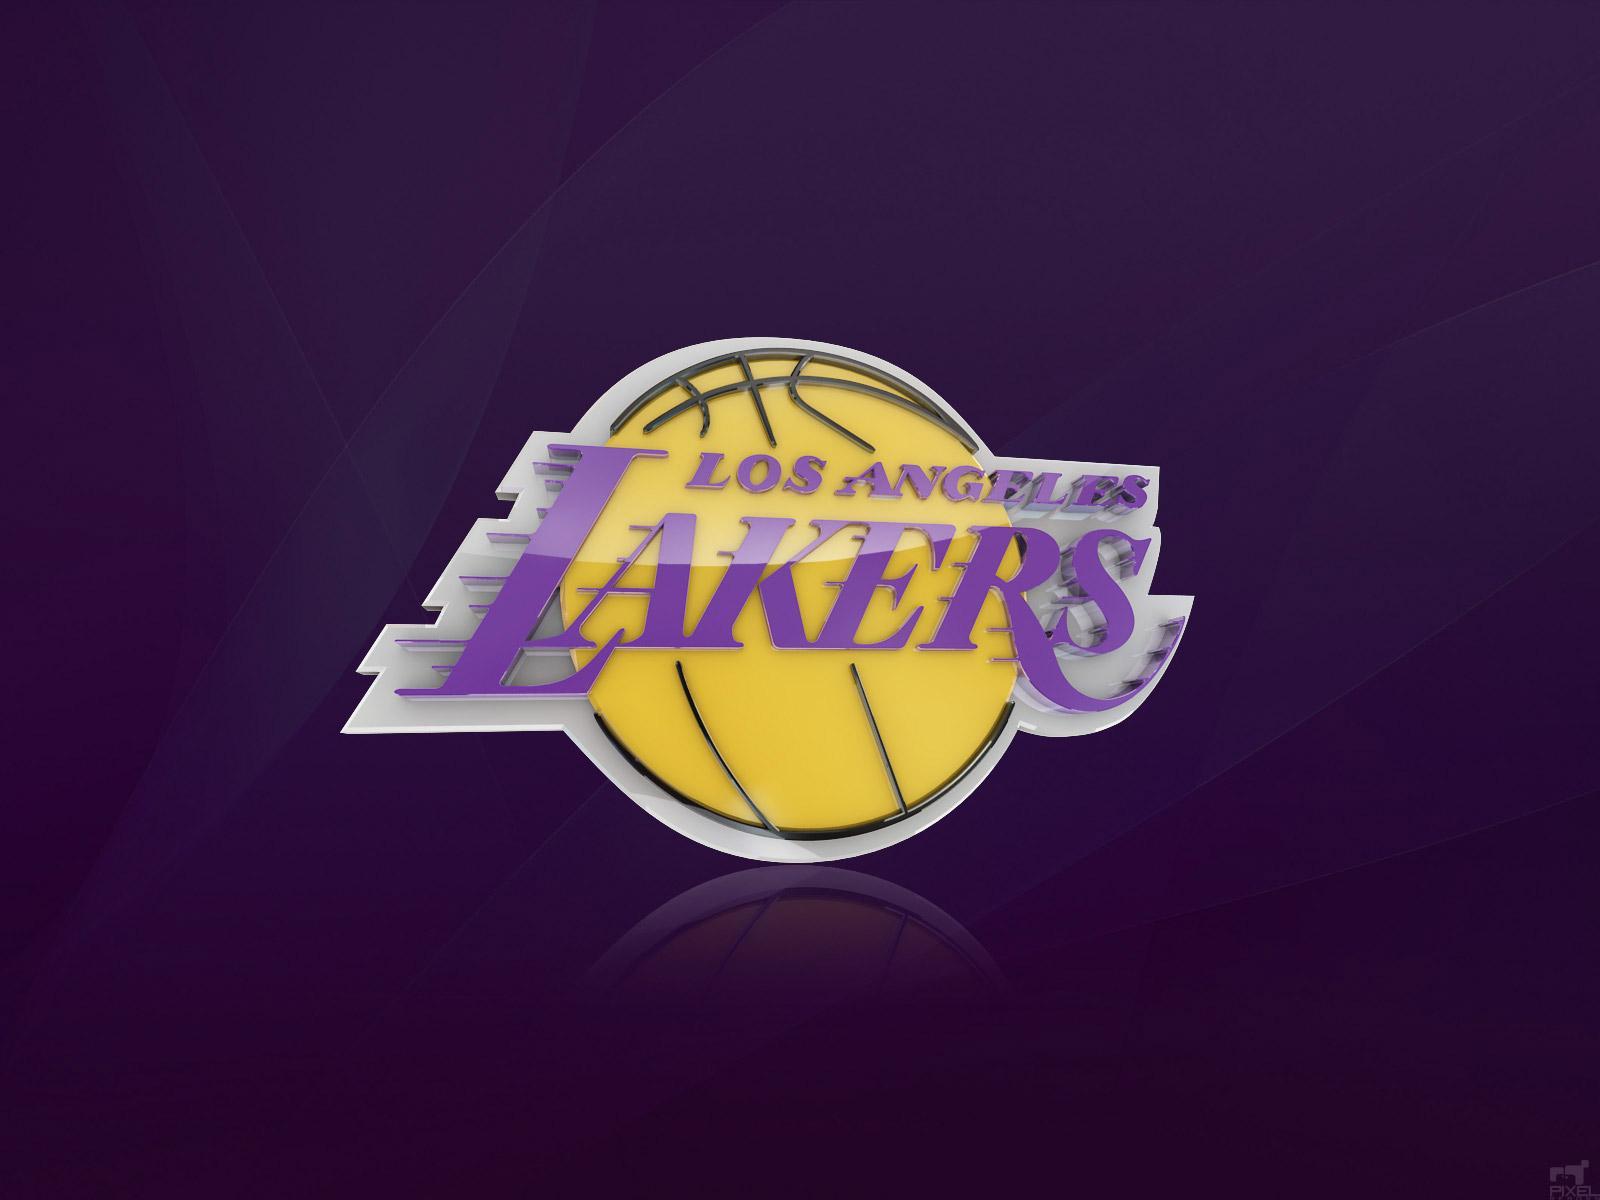 Los Angeles Lakers Logo Wallpaper. Basketball Wallpaper at